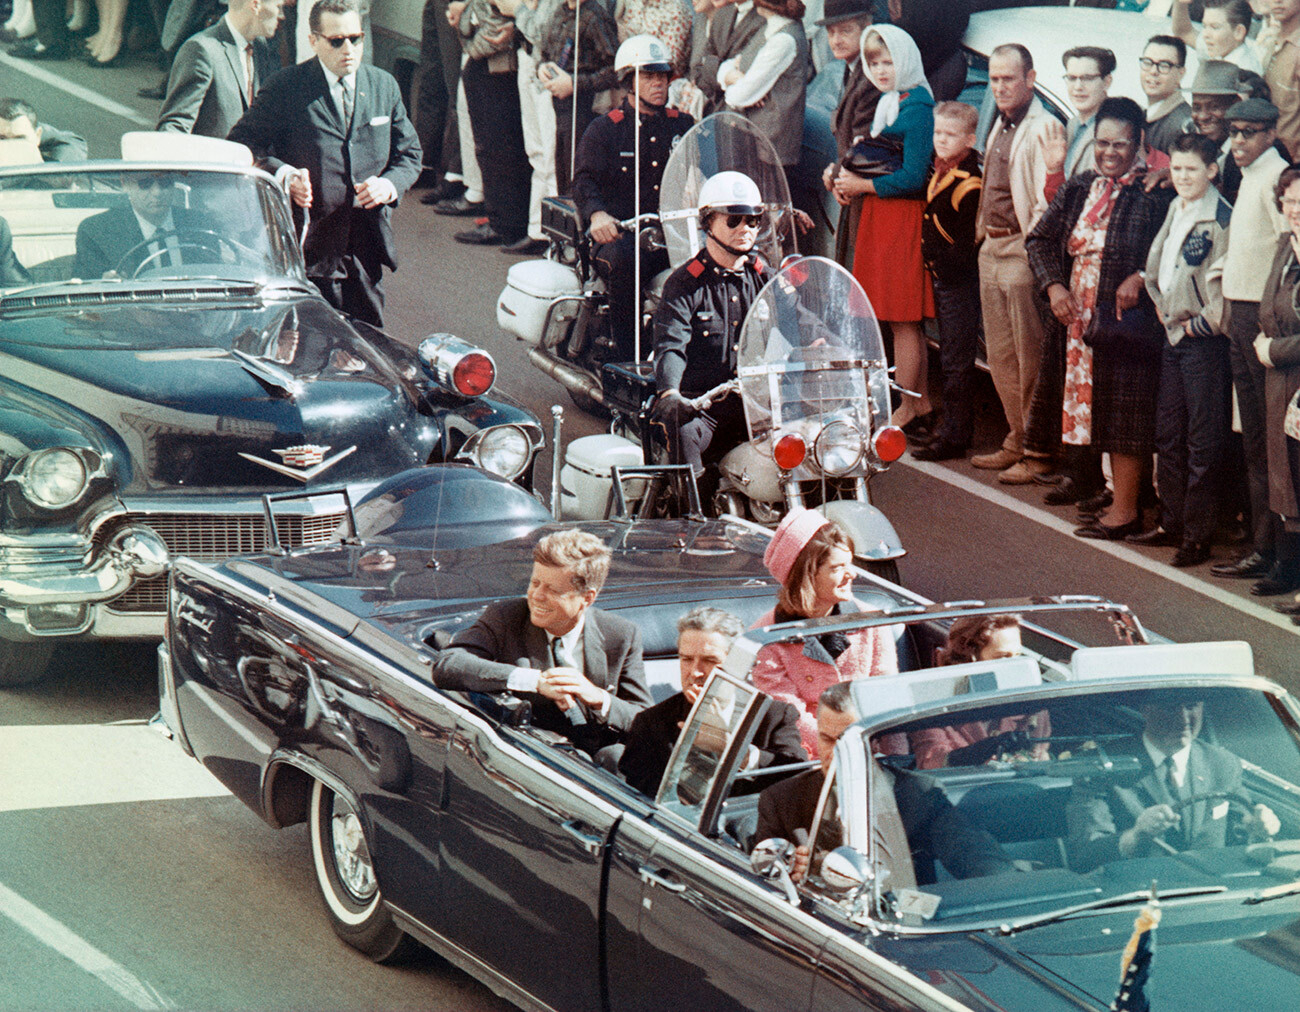 Präsident Kennedy und seine Frau begrüßen die Menschenmenge am 22. November 1963 in Dallas, Texas. Wenige Minuten später wurde Kennedy ermordet.